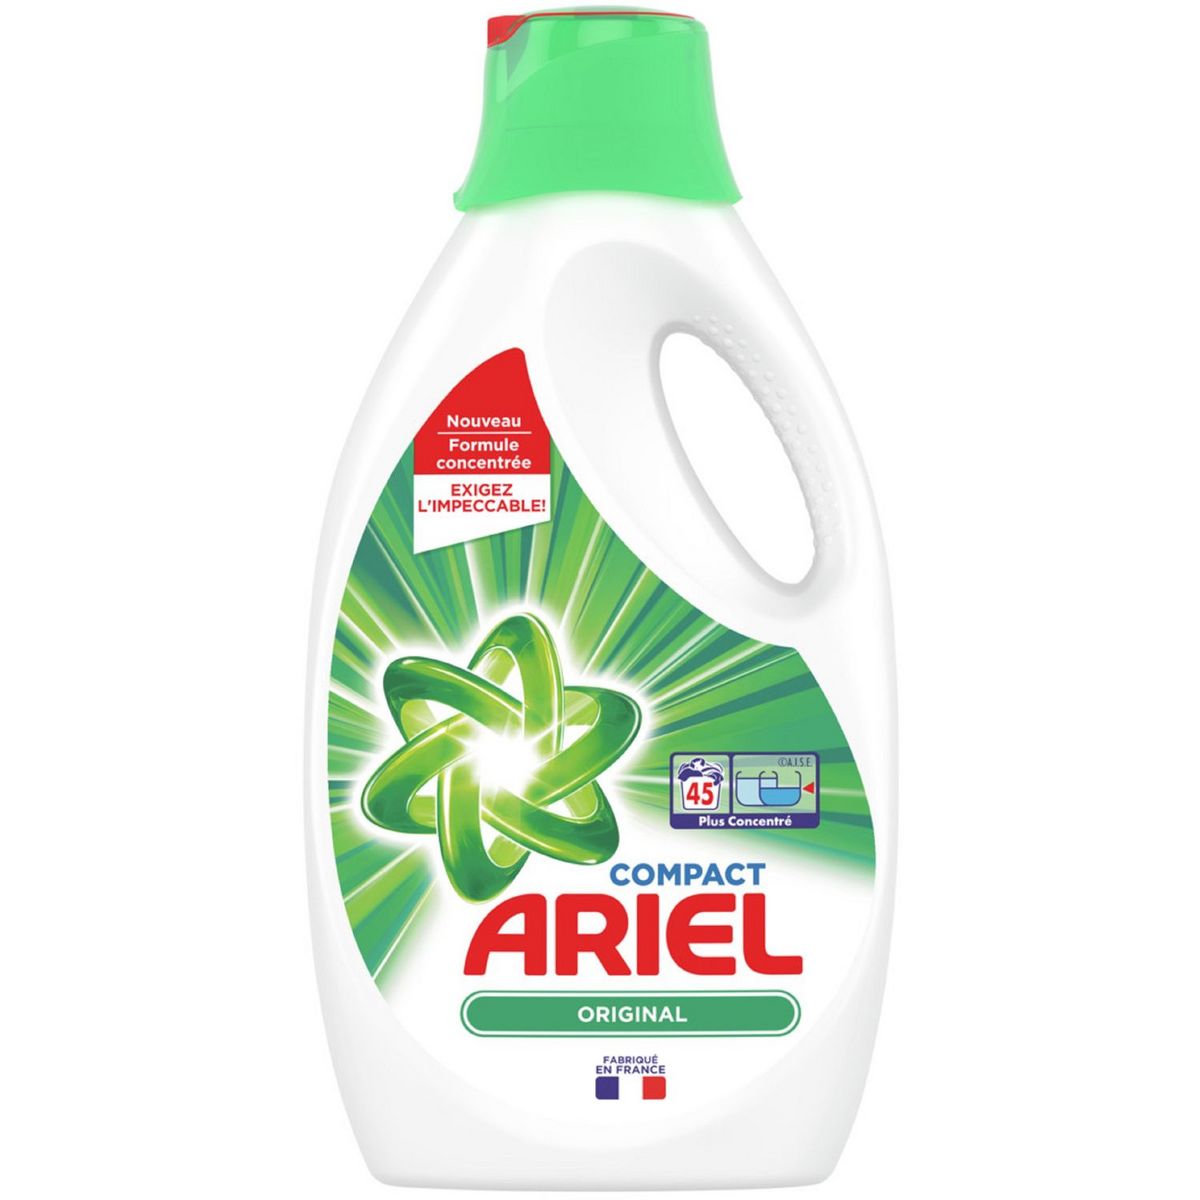 Toutes les promotions de Ariel liquide - Trouvez et découvrez la promotion  de Ariel liquide la moins chère!